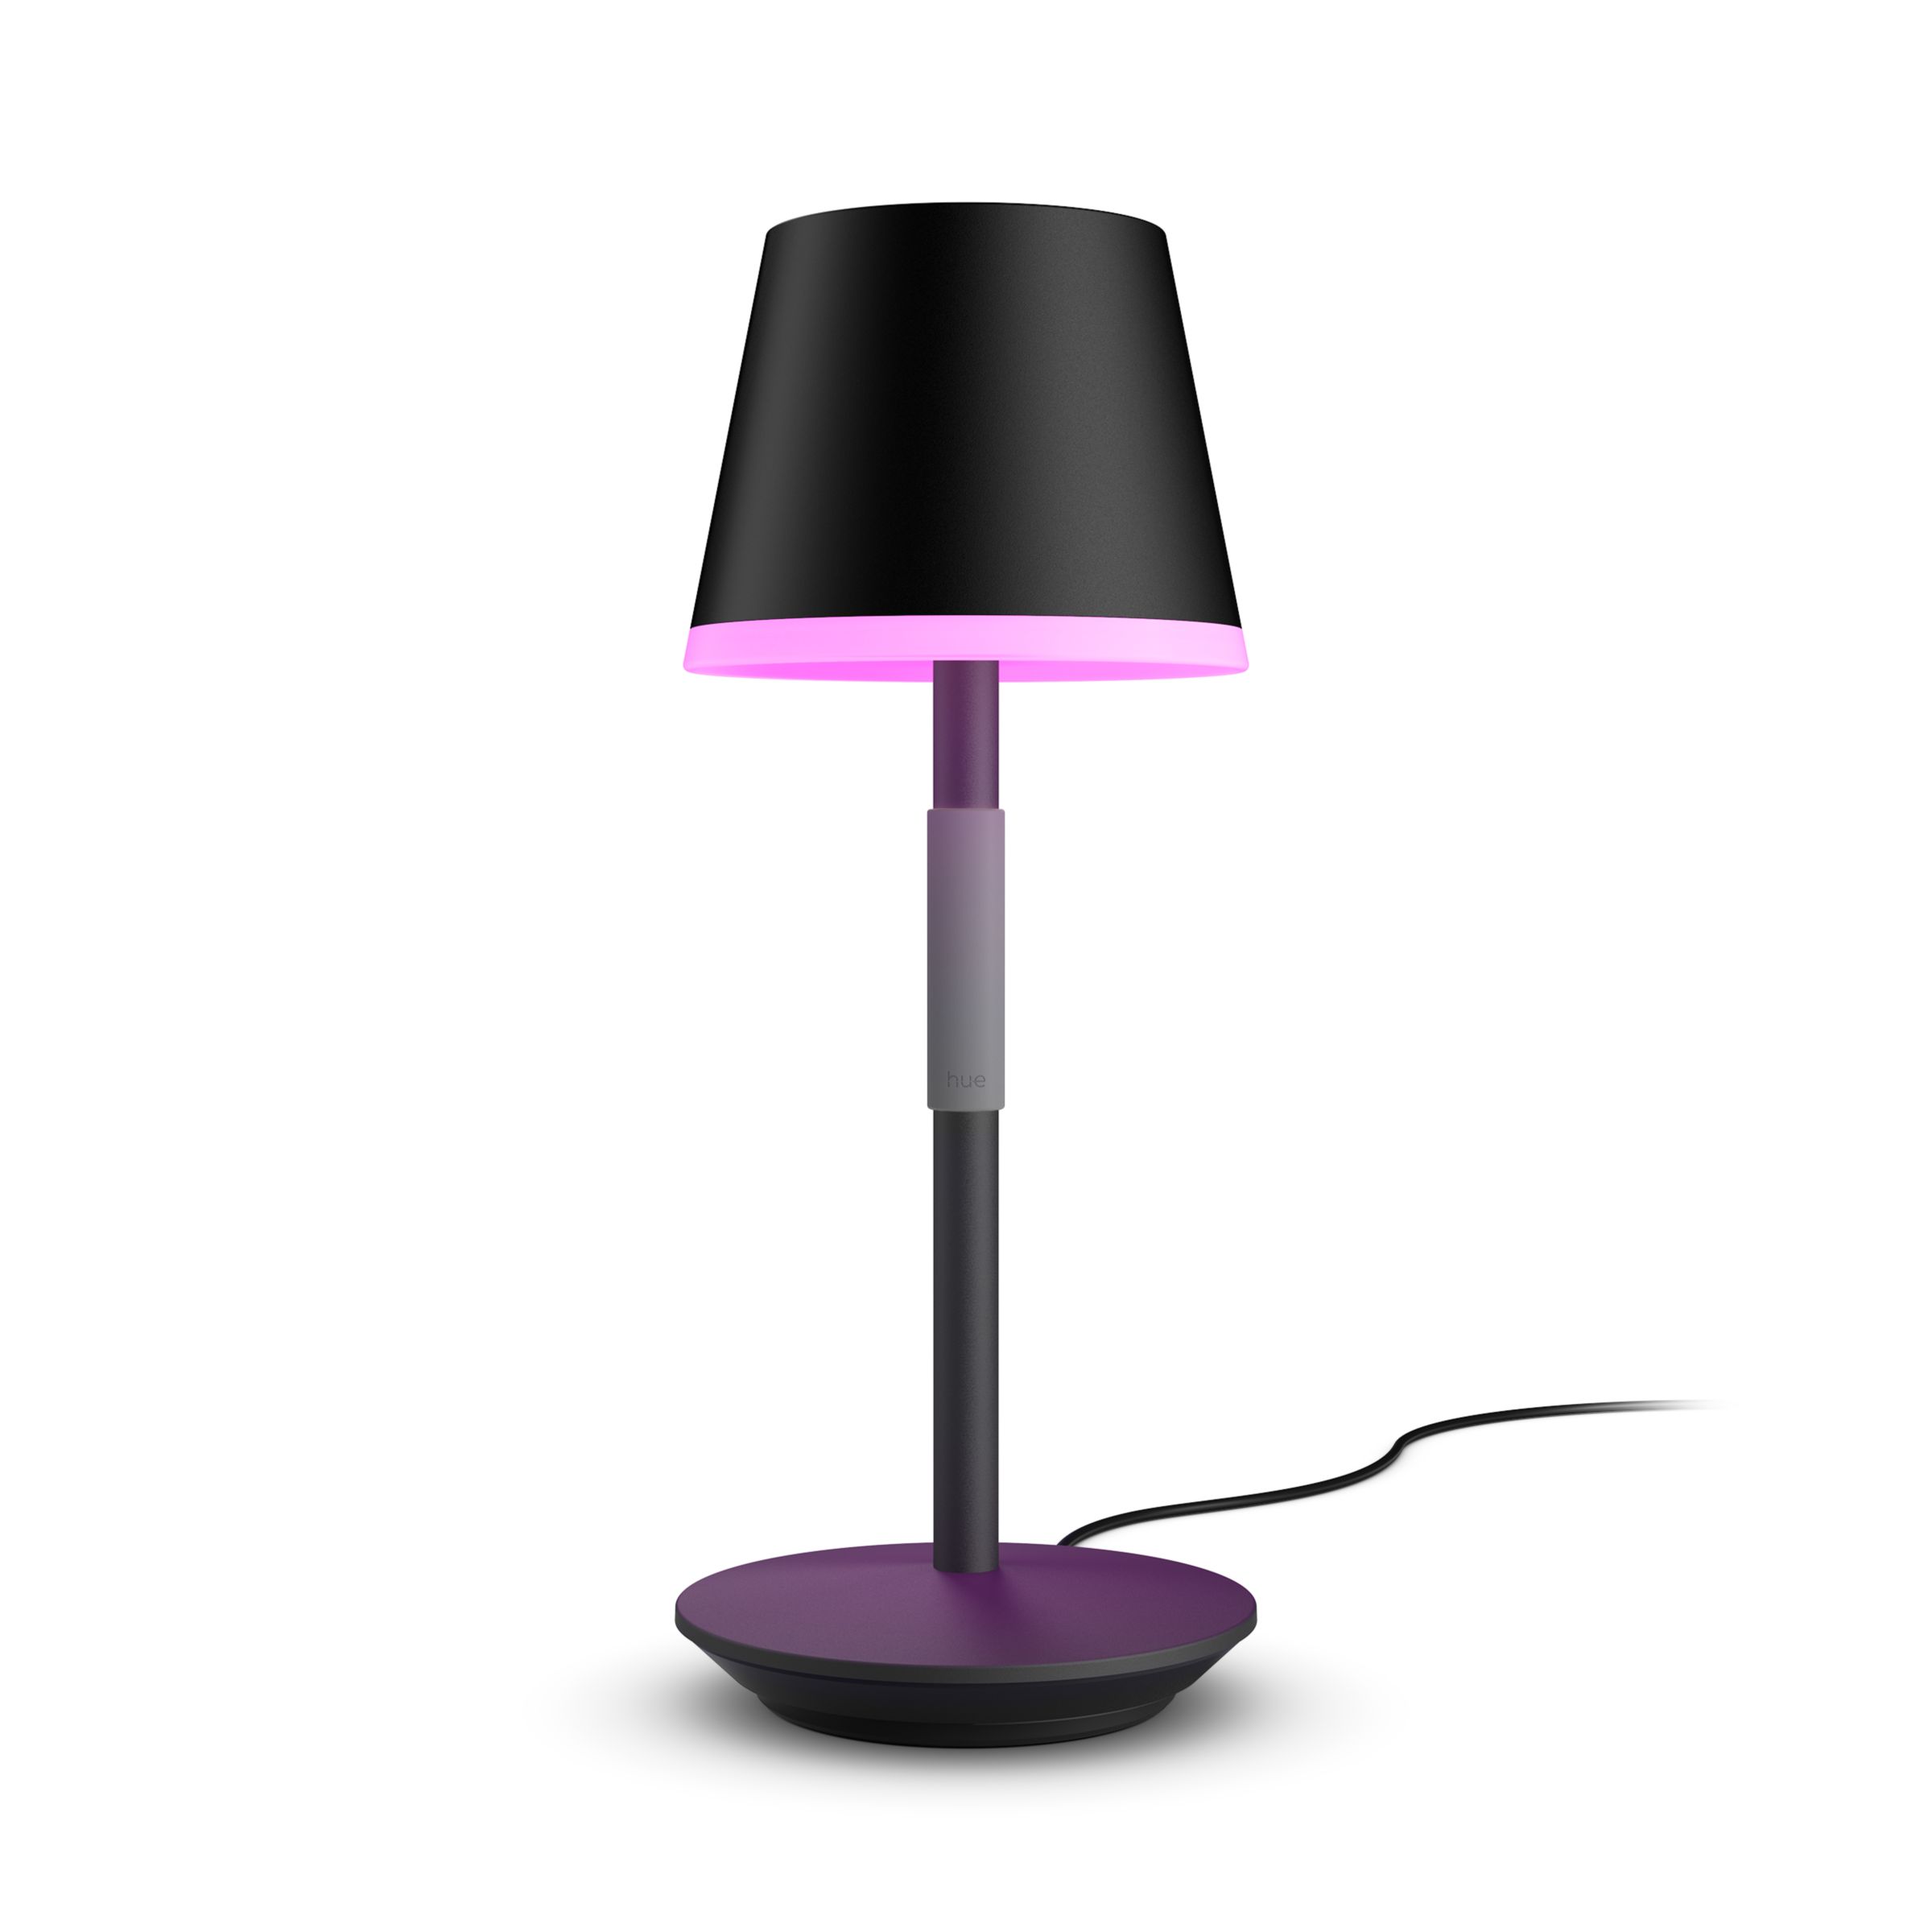 lanthaan Onophoudelijk naar voren gebracht Hue Go portable table lamp | Philips Hue US